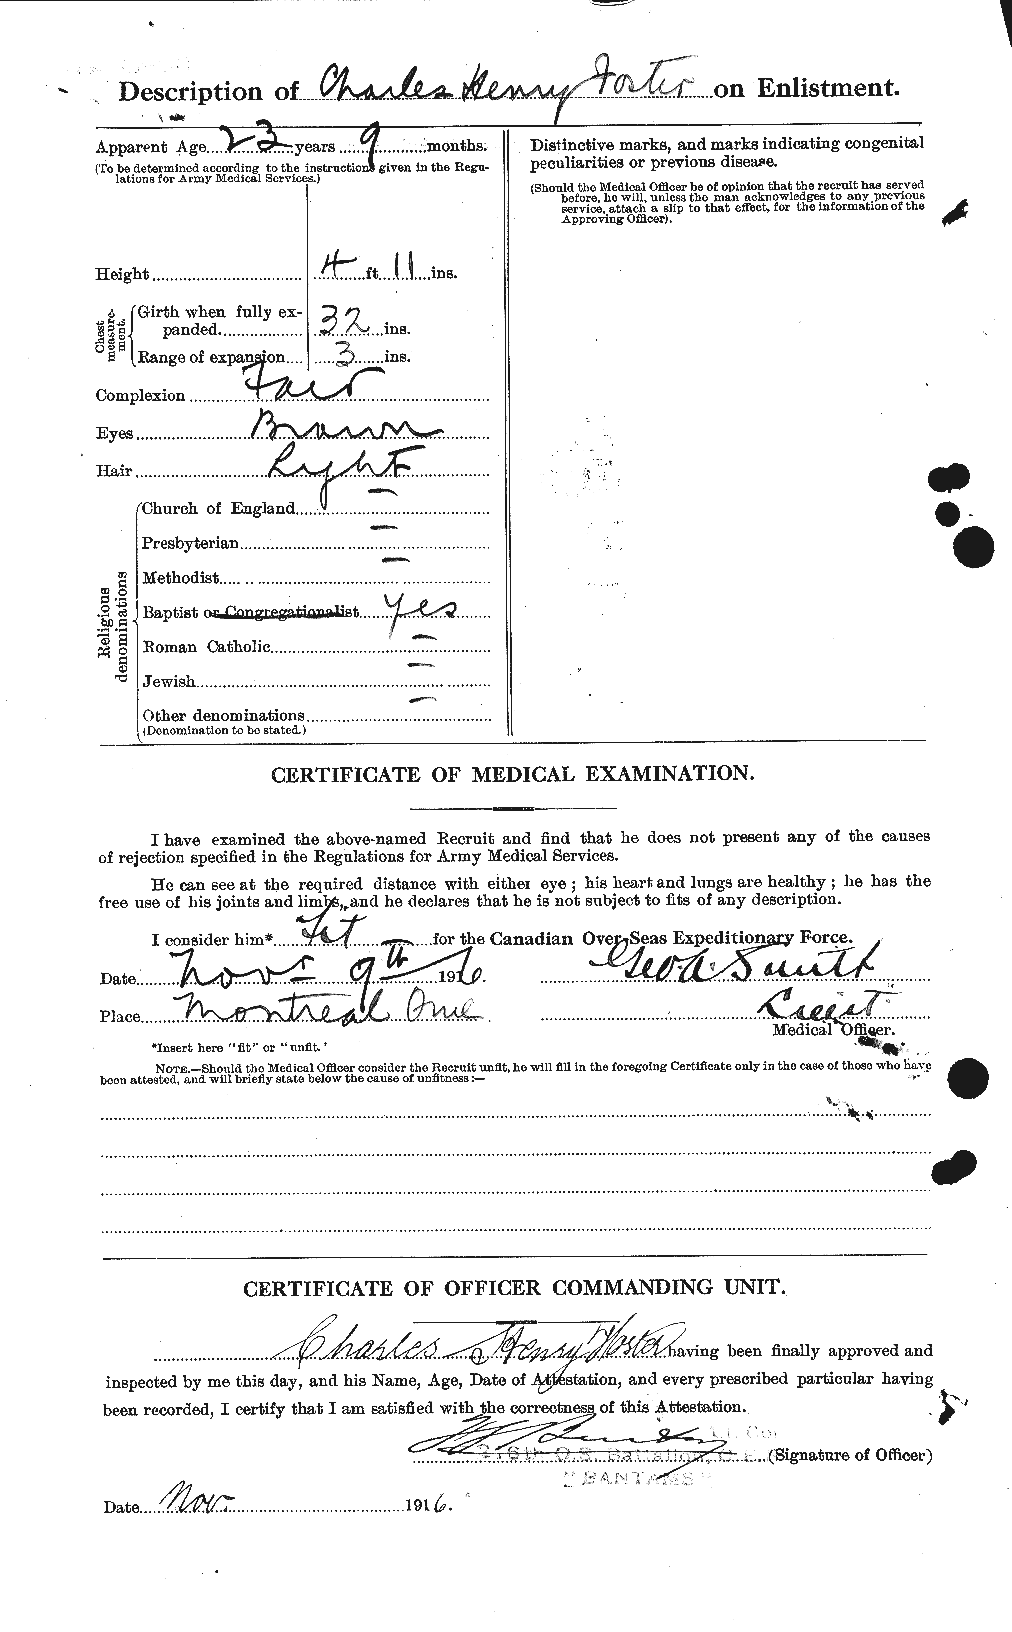 Dossiers du Personnel de la Première Guerre mondiale - CEC 330518b